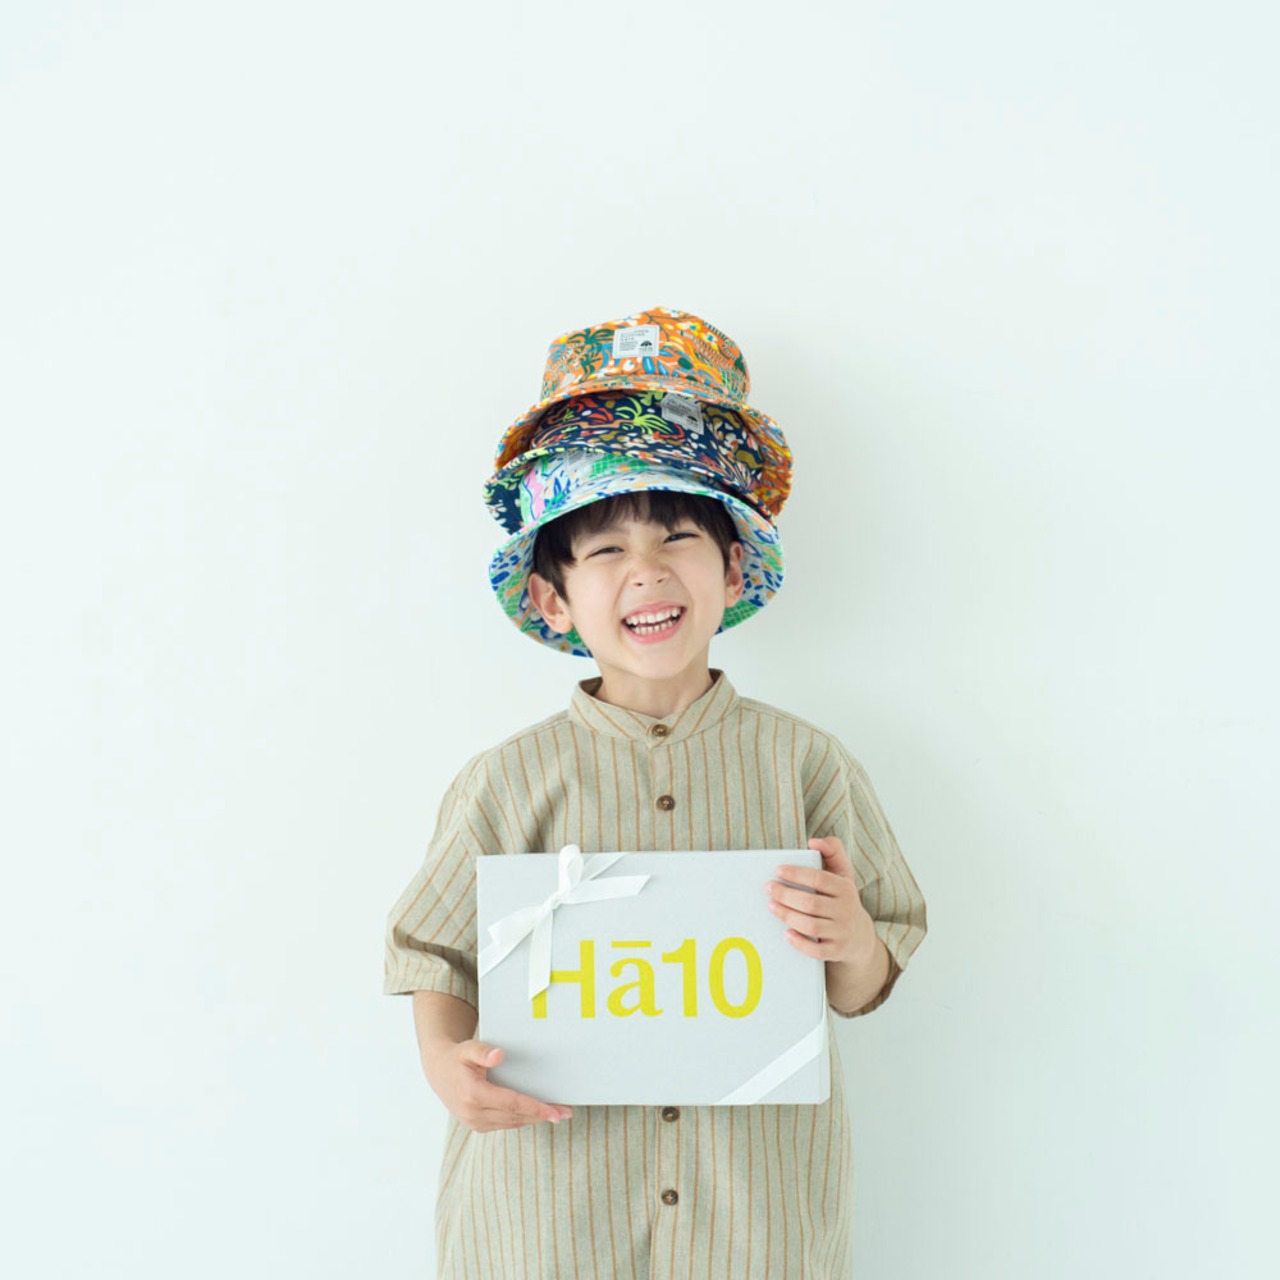 バケットハット【オレンジ】54cm ブランド 子供帽子  ベビー帽子 キッズハット キッズキャップ 紫外線対策 日本製 出産祝い